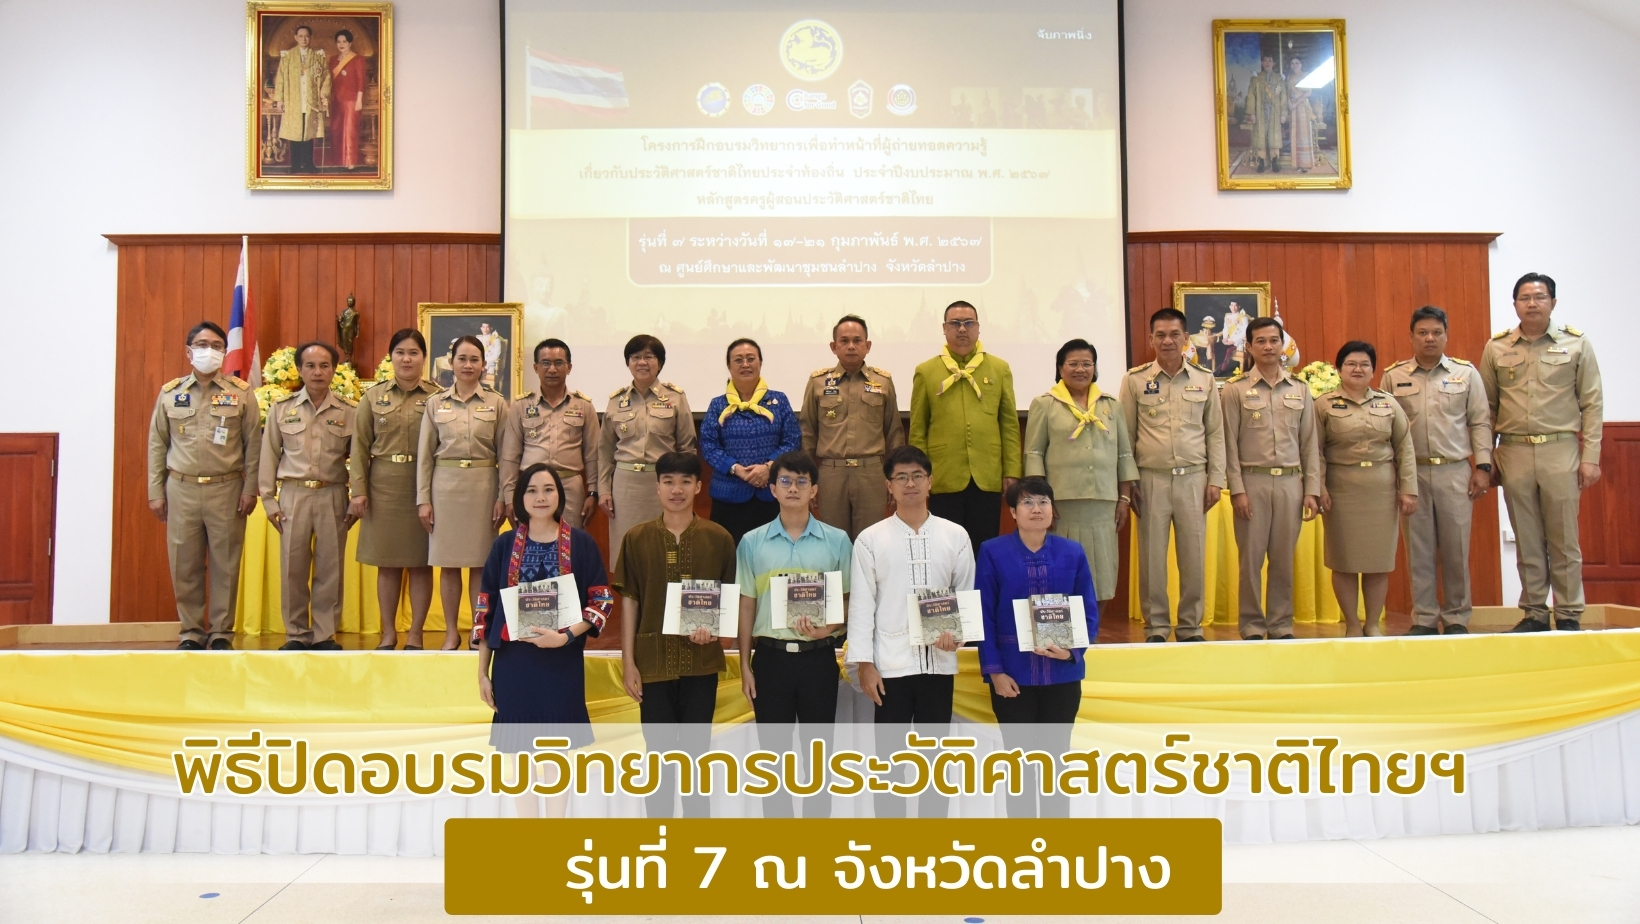 รองปลัด มท. มอบเกียรติบัตรและปิดการอบรมวิทยากรประวัติศาสตร์ชาติไทยประจำท้องถิ่น รุ่นที่ 7 ณ จังหวัดลำปาง